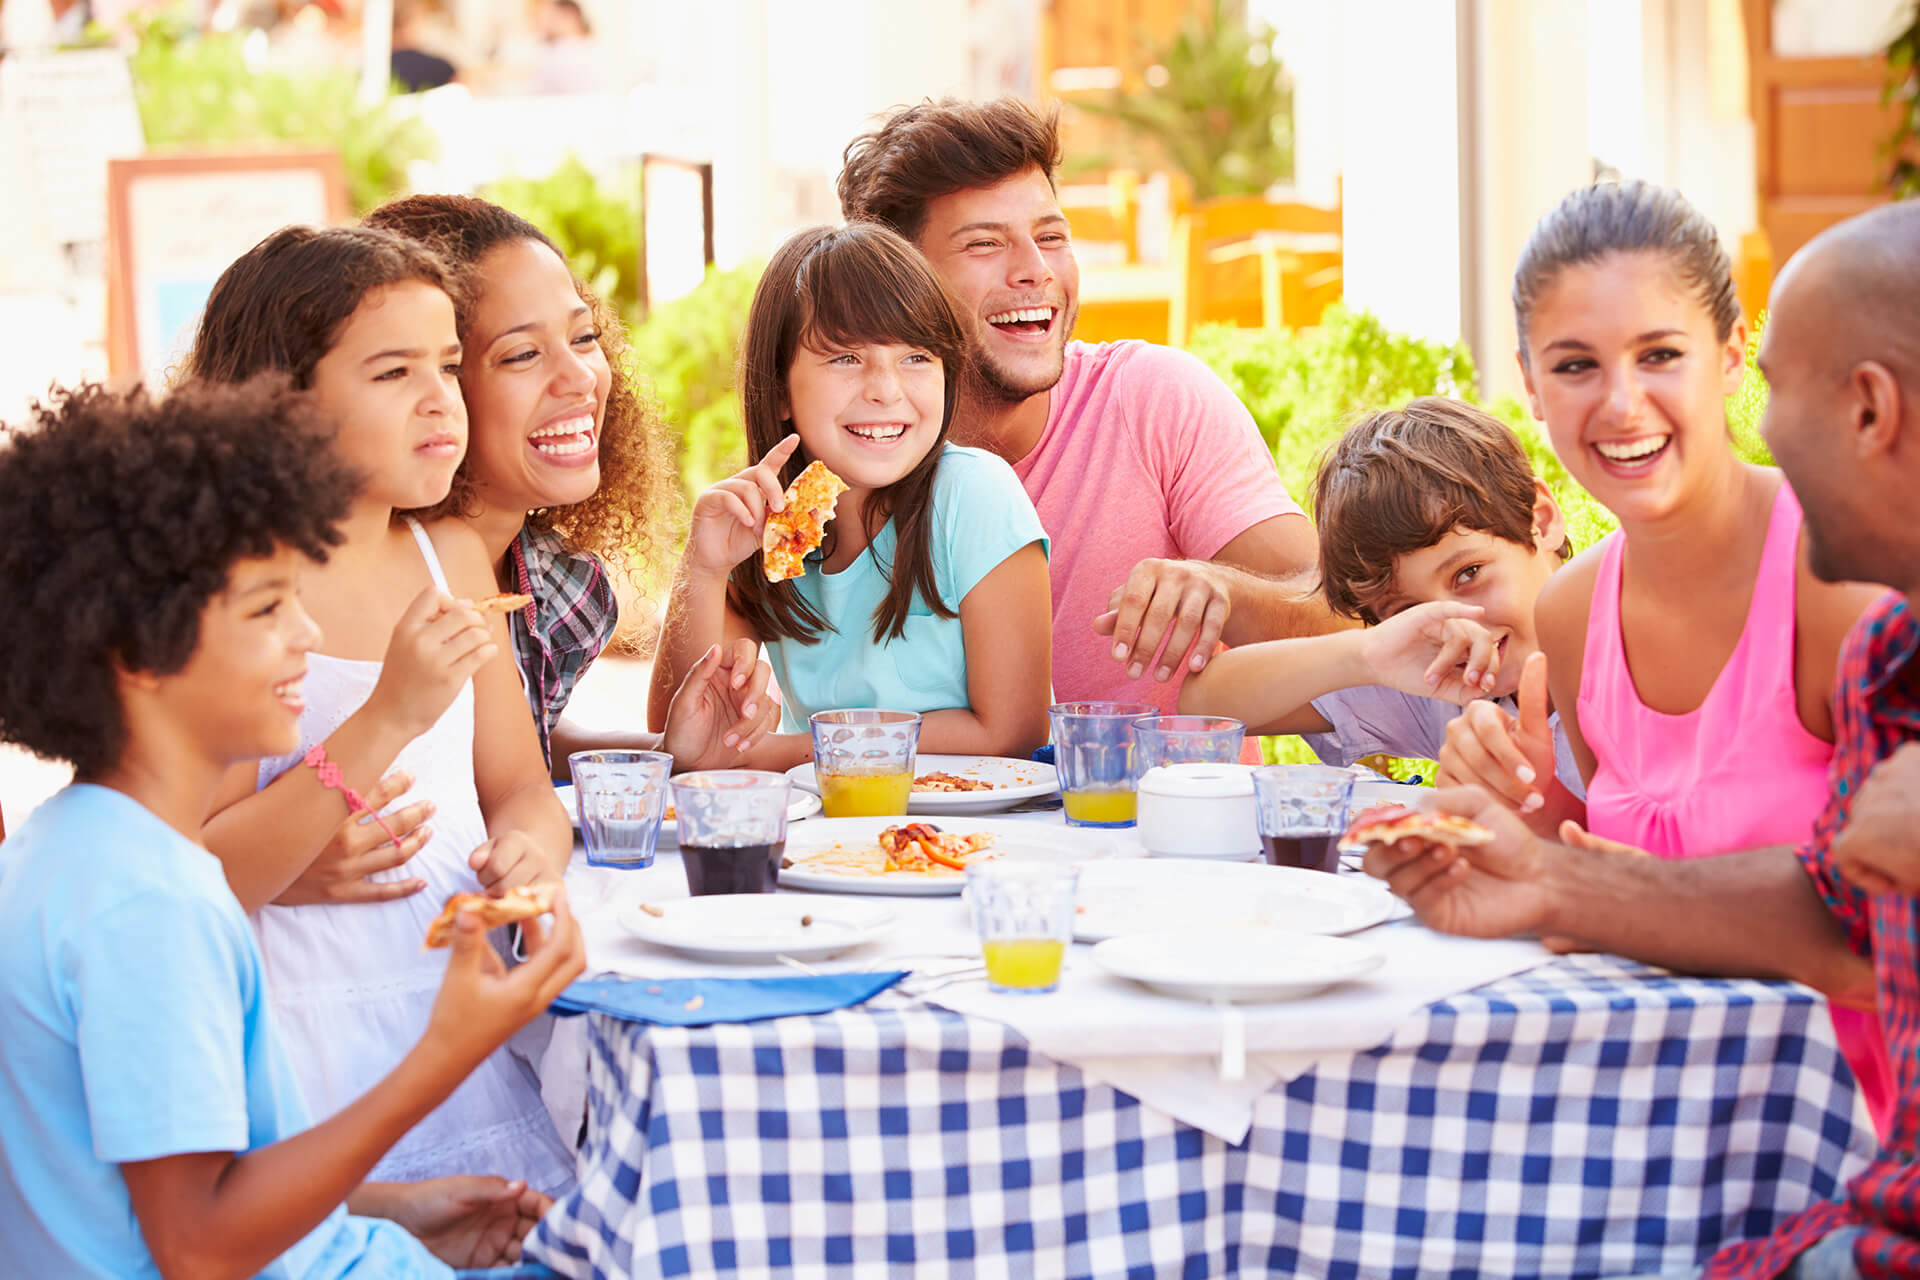 Hospitality | 2 | Zwei Familien essen gemeinsam in einem Restaurant im Freien